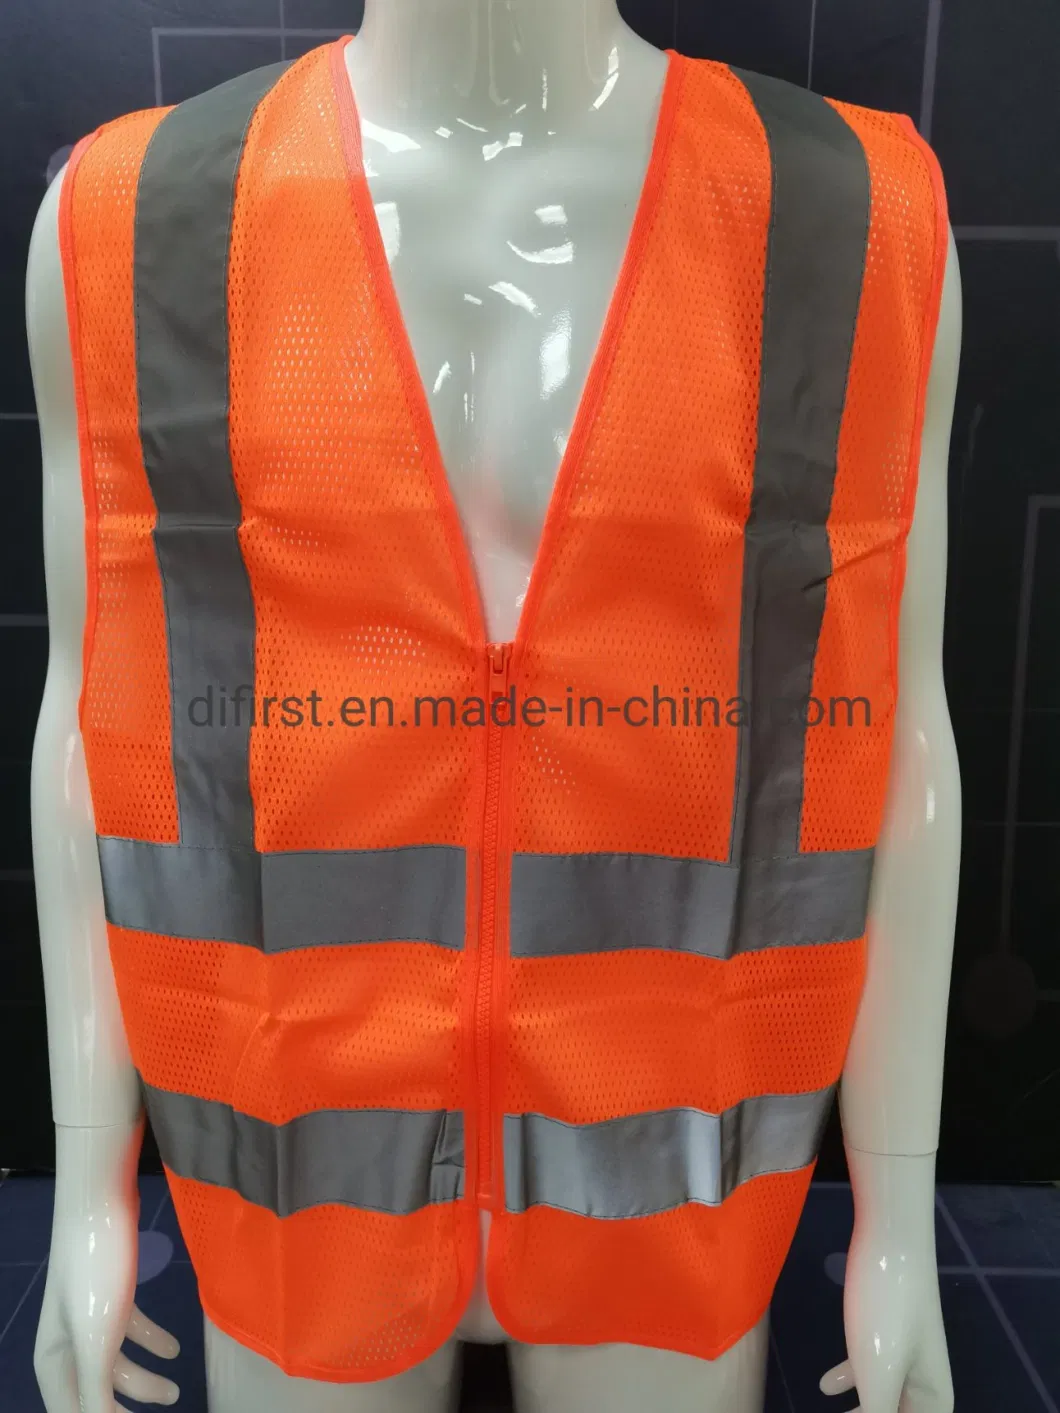 X Back South America Reflective Safety Vest Dfv1193